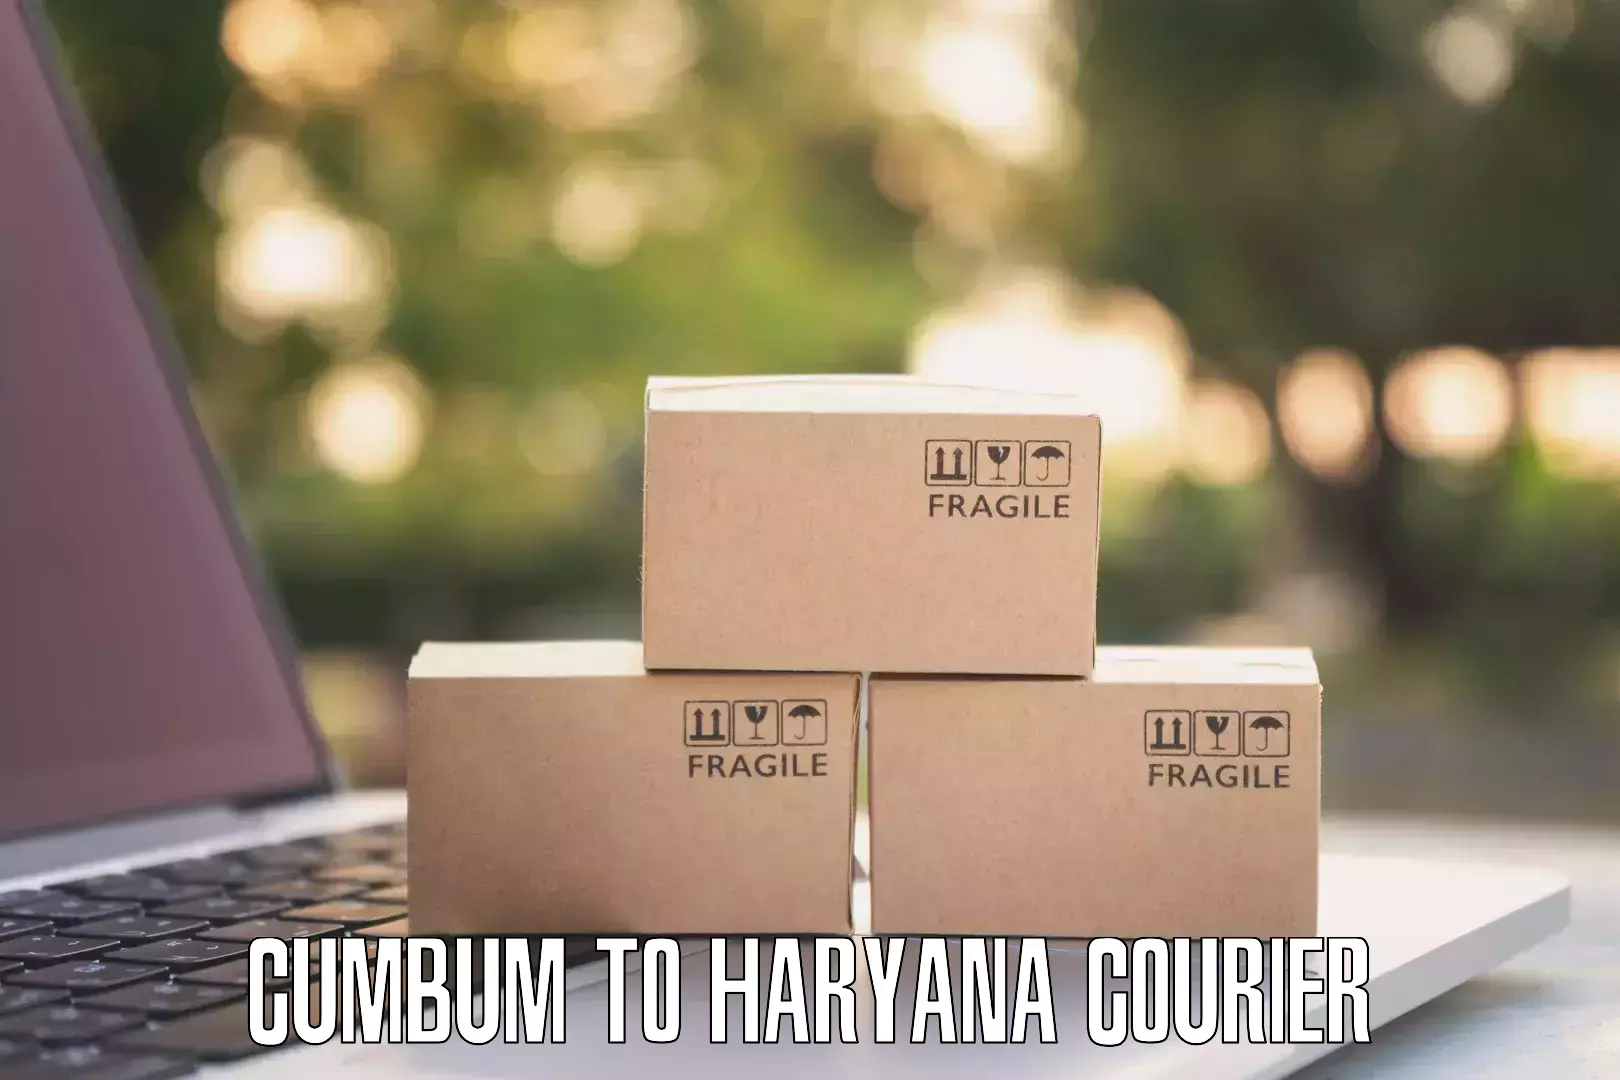 Premium courier services Cumbum to Haryana